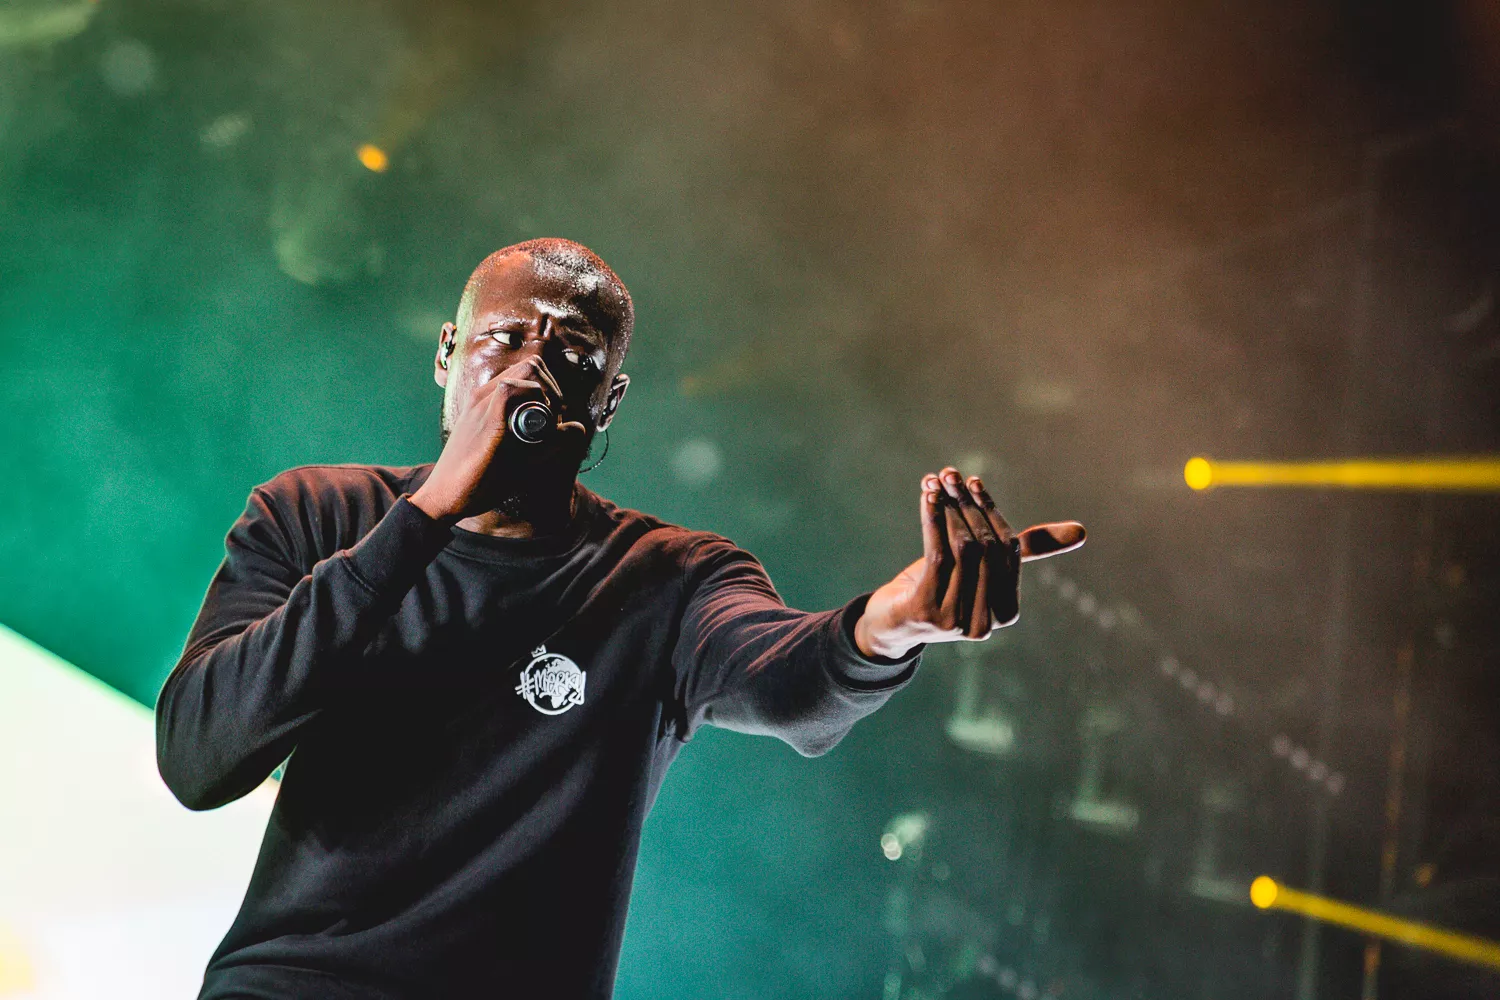 Rapstjärnan anklagar festival för rasism – ställer in sin spelning